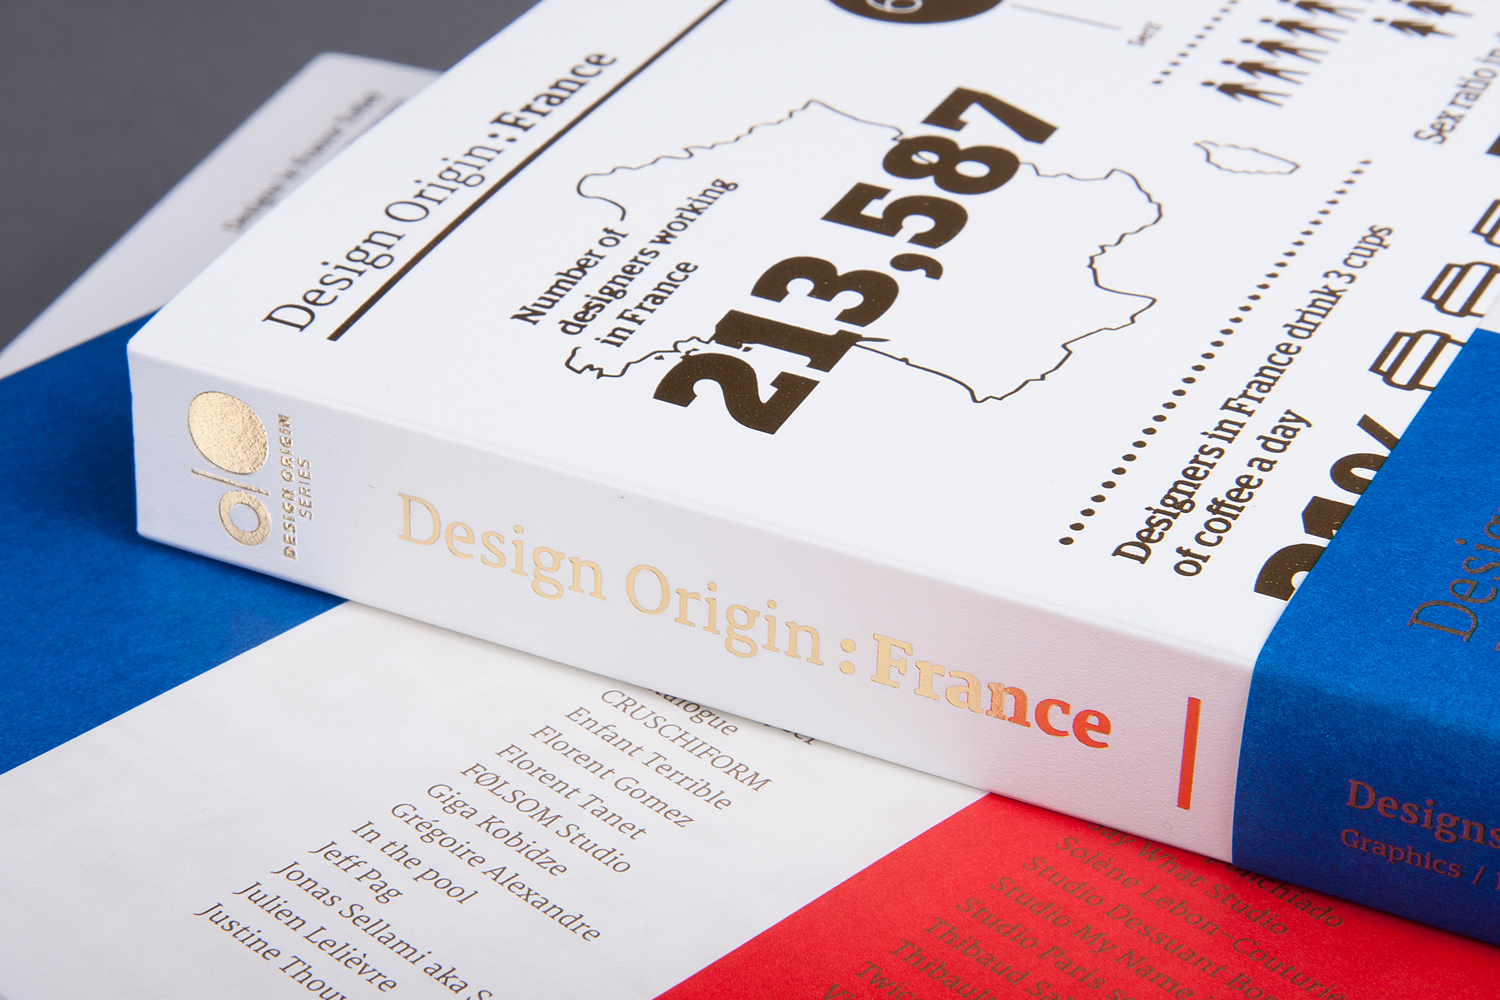 Design Origin: France